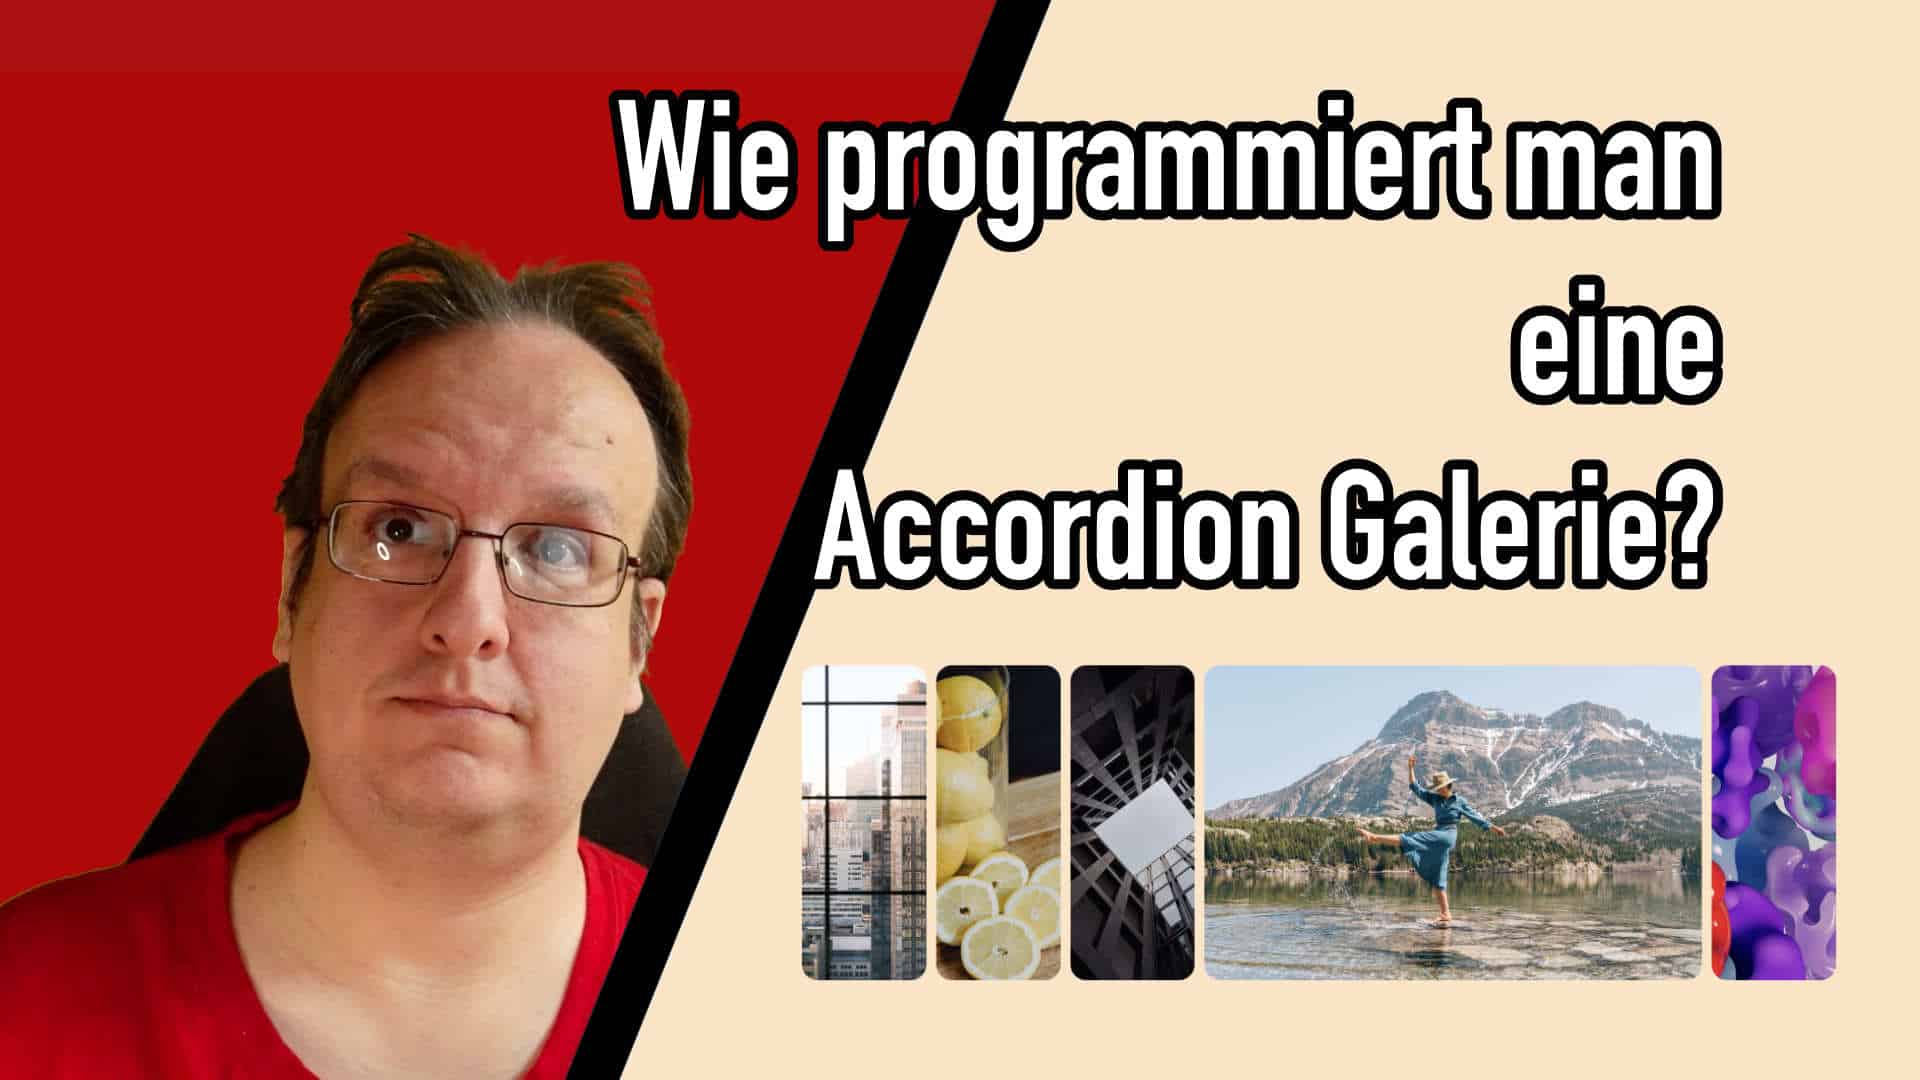 Wie programmiert man eine Accordion Galerie? (HTML & CSS)